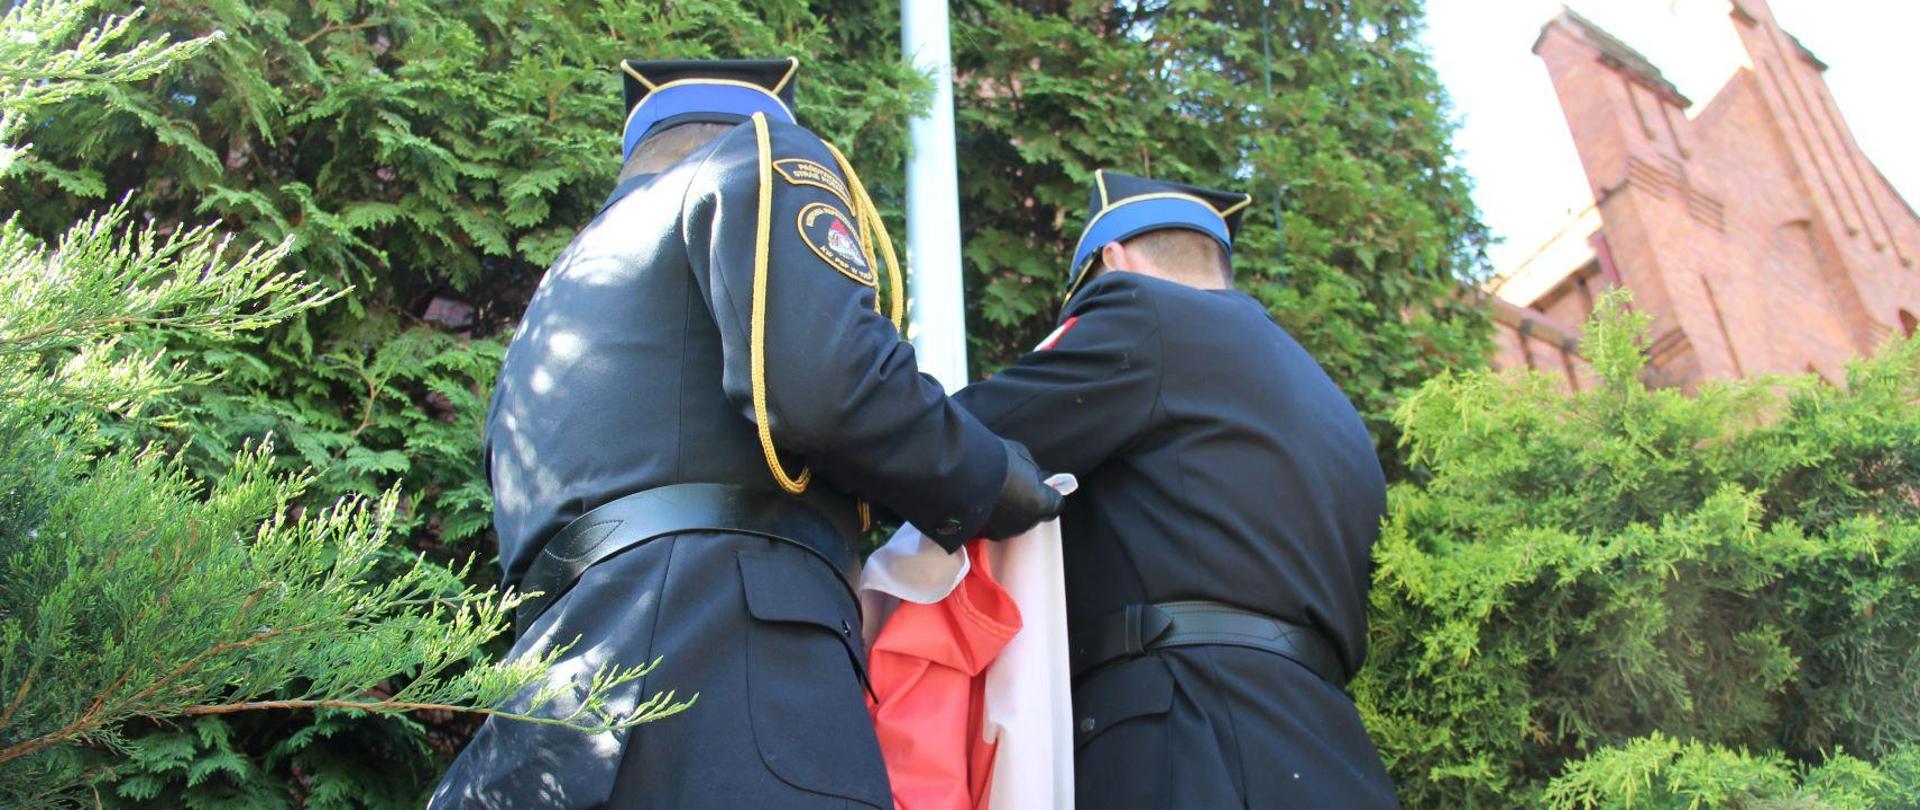 Dwaj oficerowie w mundurach galowych mocują flagę biało-czerwoną do zaczepów na maszcie. Wokół krzewy ozdobne, w dali fragment budynku.